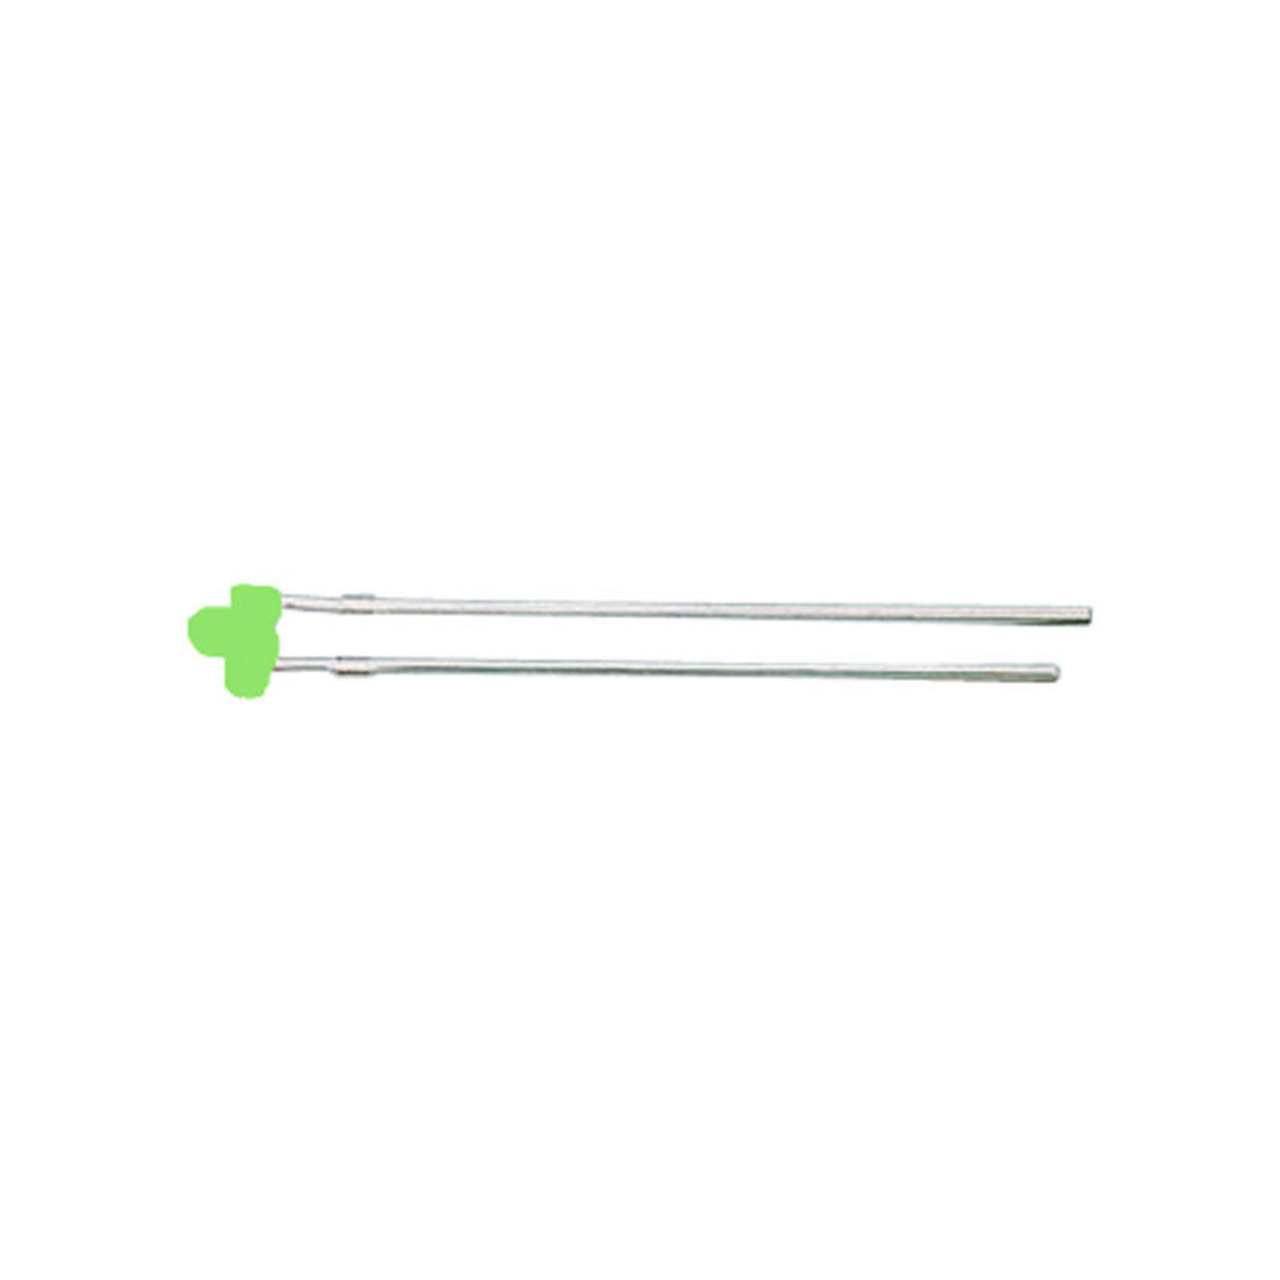 Miniatur-LED 1-8 mm Grün unter Komponenten